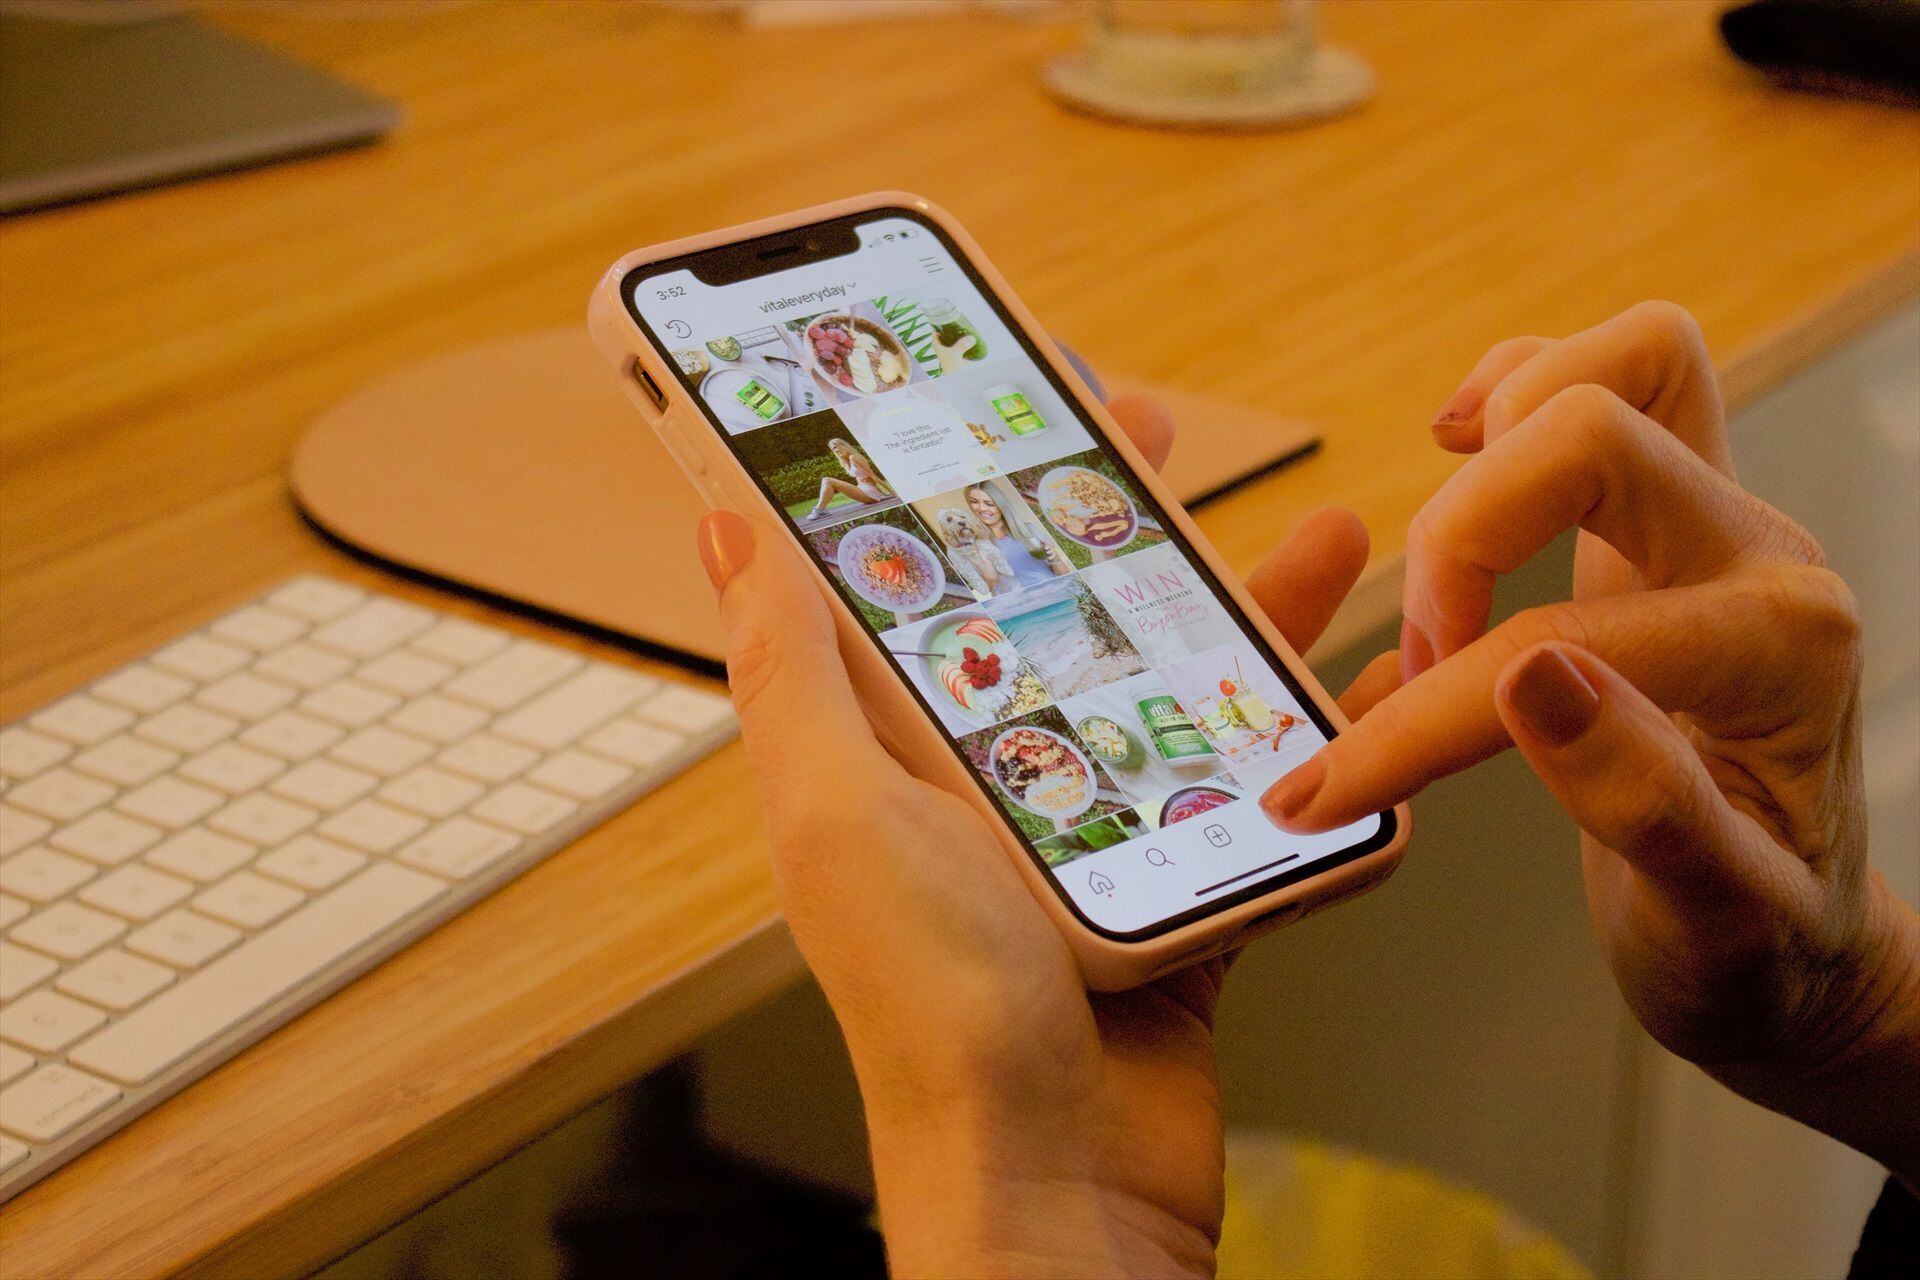 Instagram niega que comparta la ubicación precisa de los usuarios en la última actualización disponible para dispositivos iOS de Apple, en especial los iPhone.